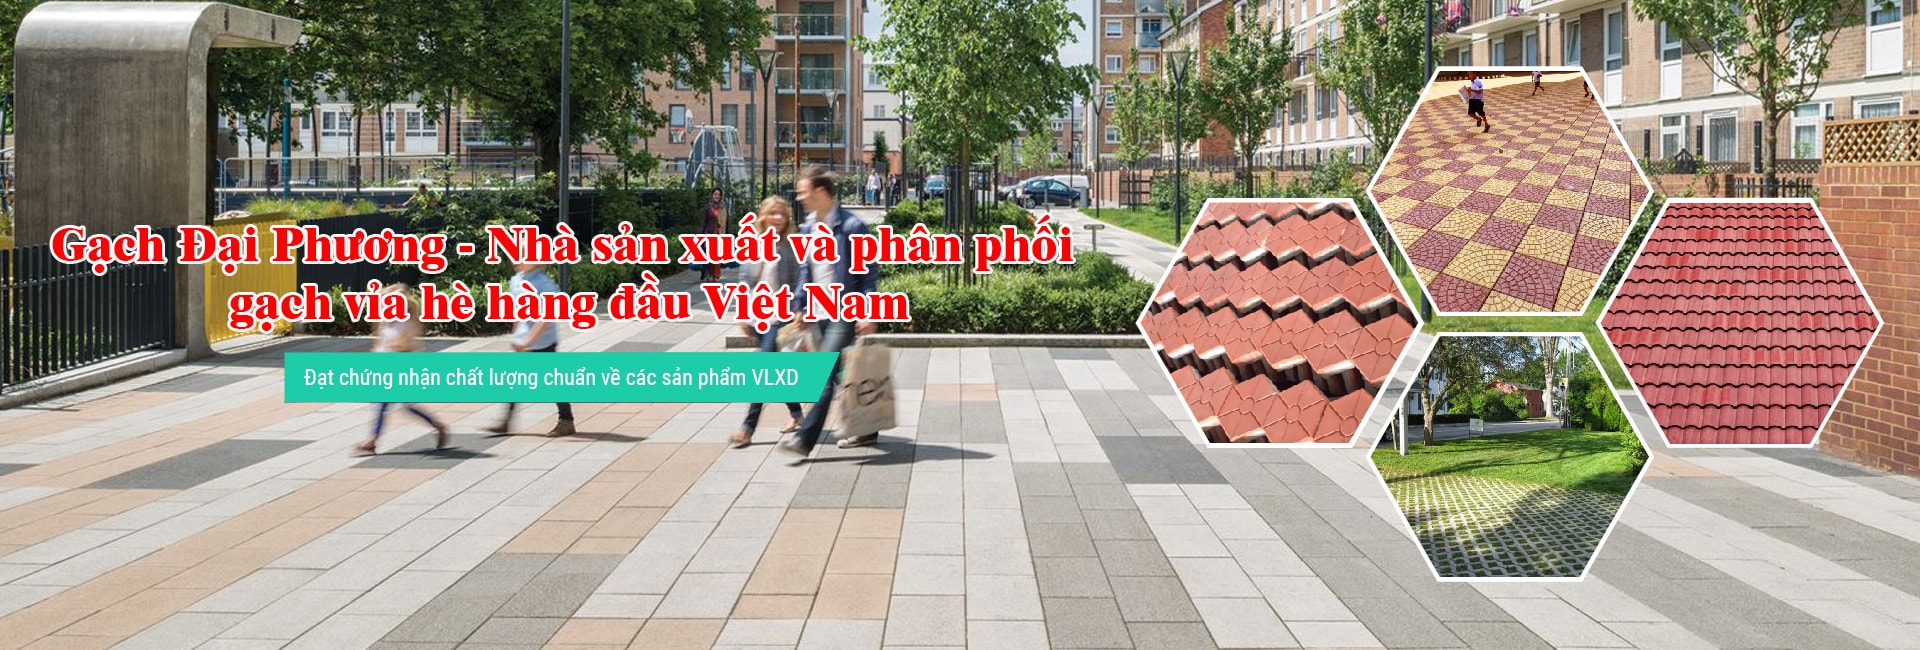 Đại Phương tự hào là công ty cung cấp gạch vỉa hè số 1 tại Hà Nội